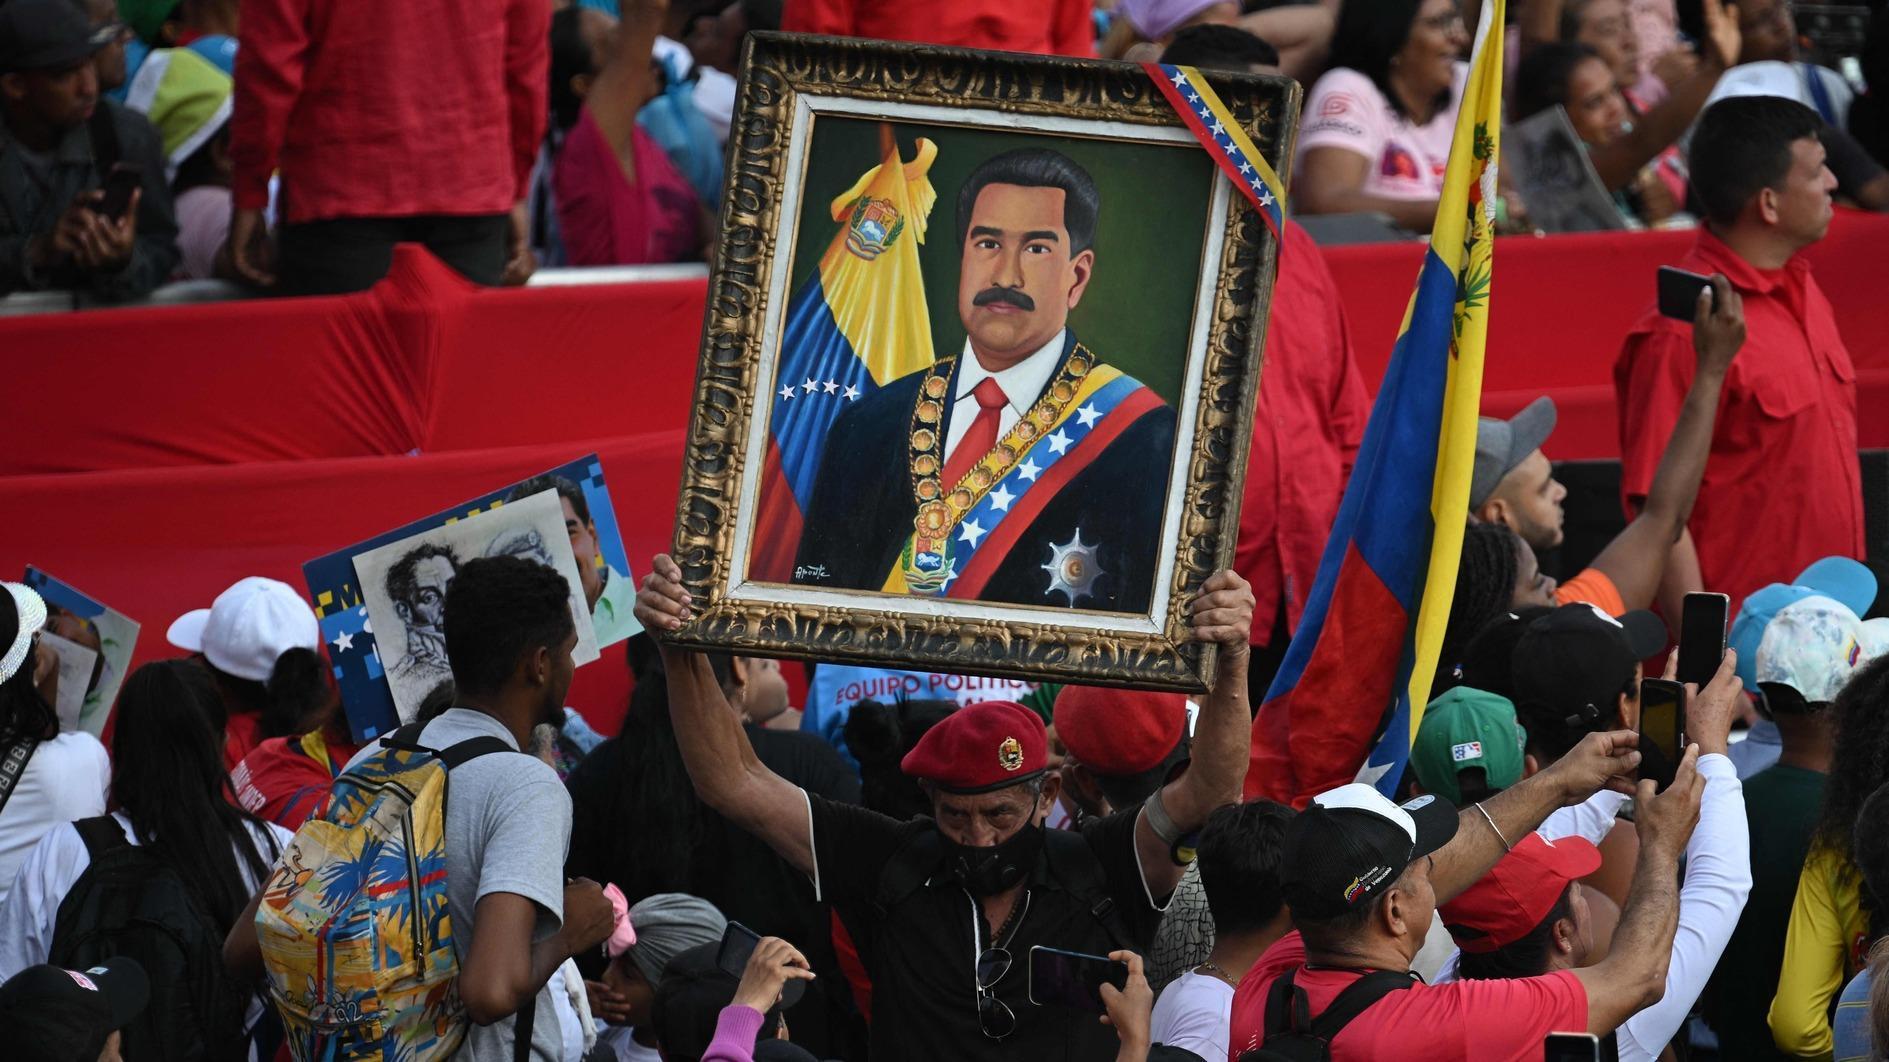 Maduro de Venezuela presenta candidatura electoral, coalición opositora bloqueada